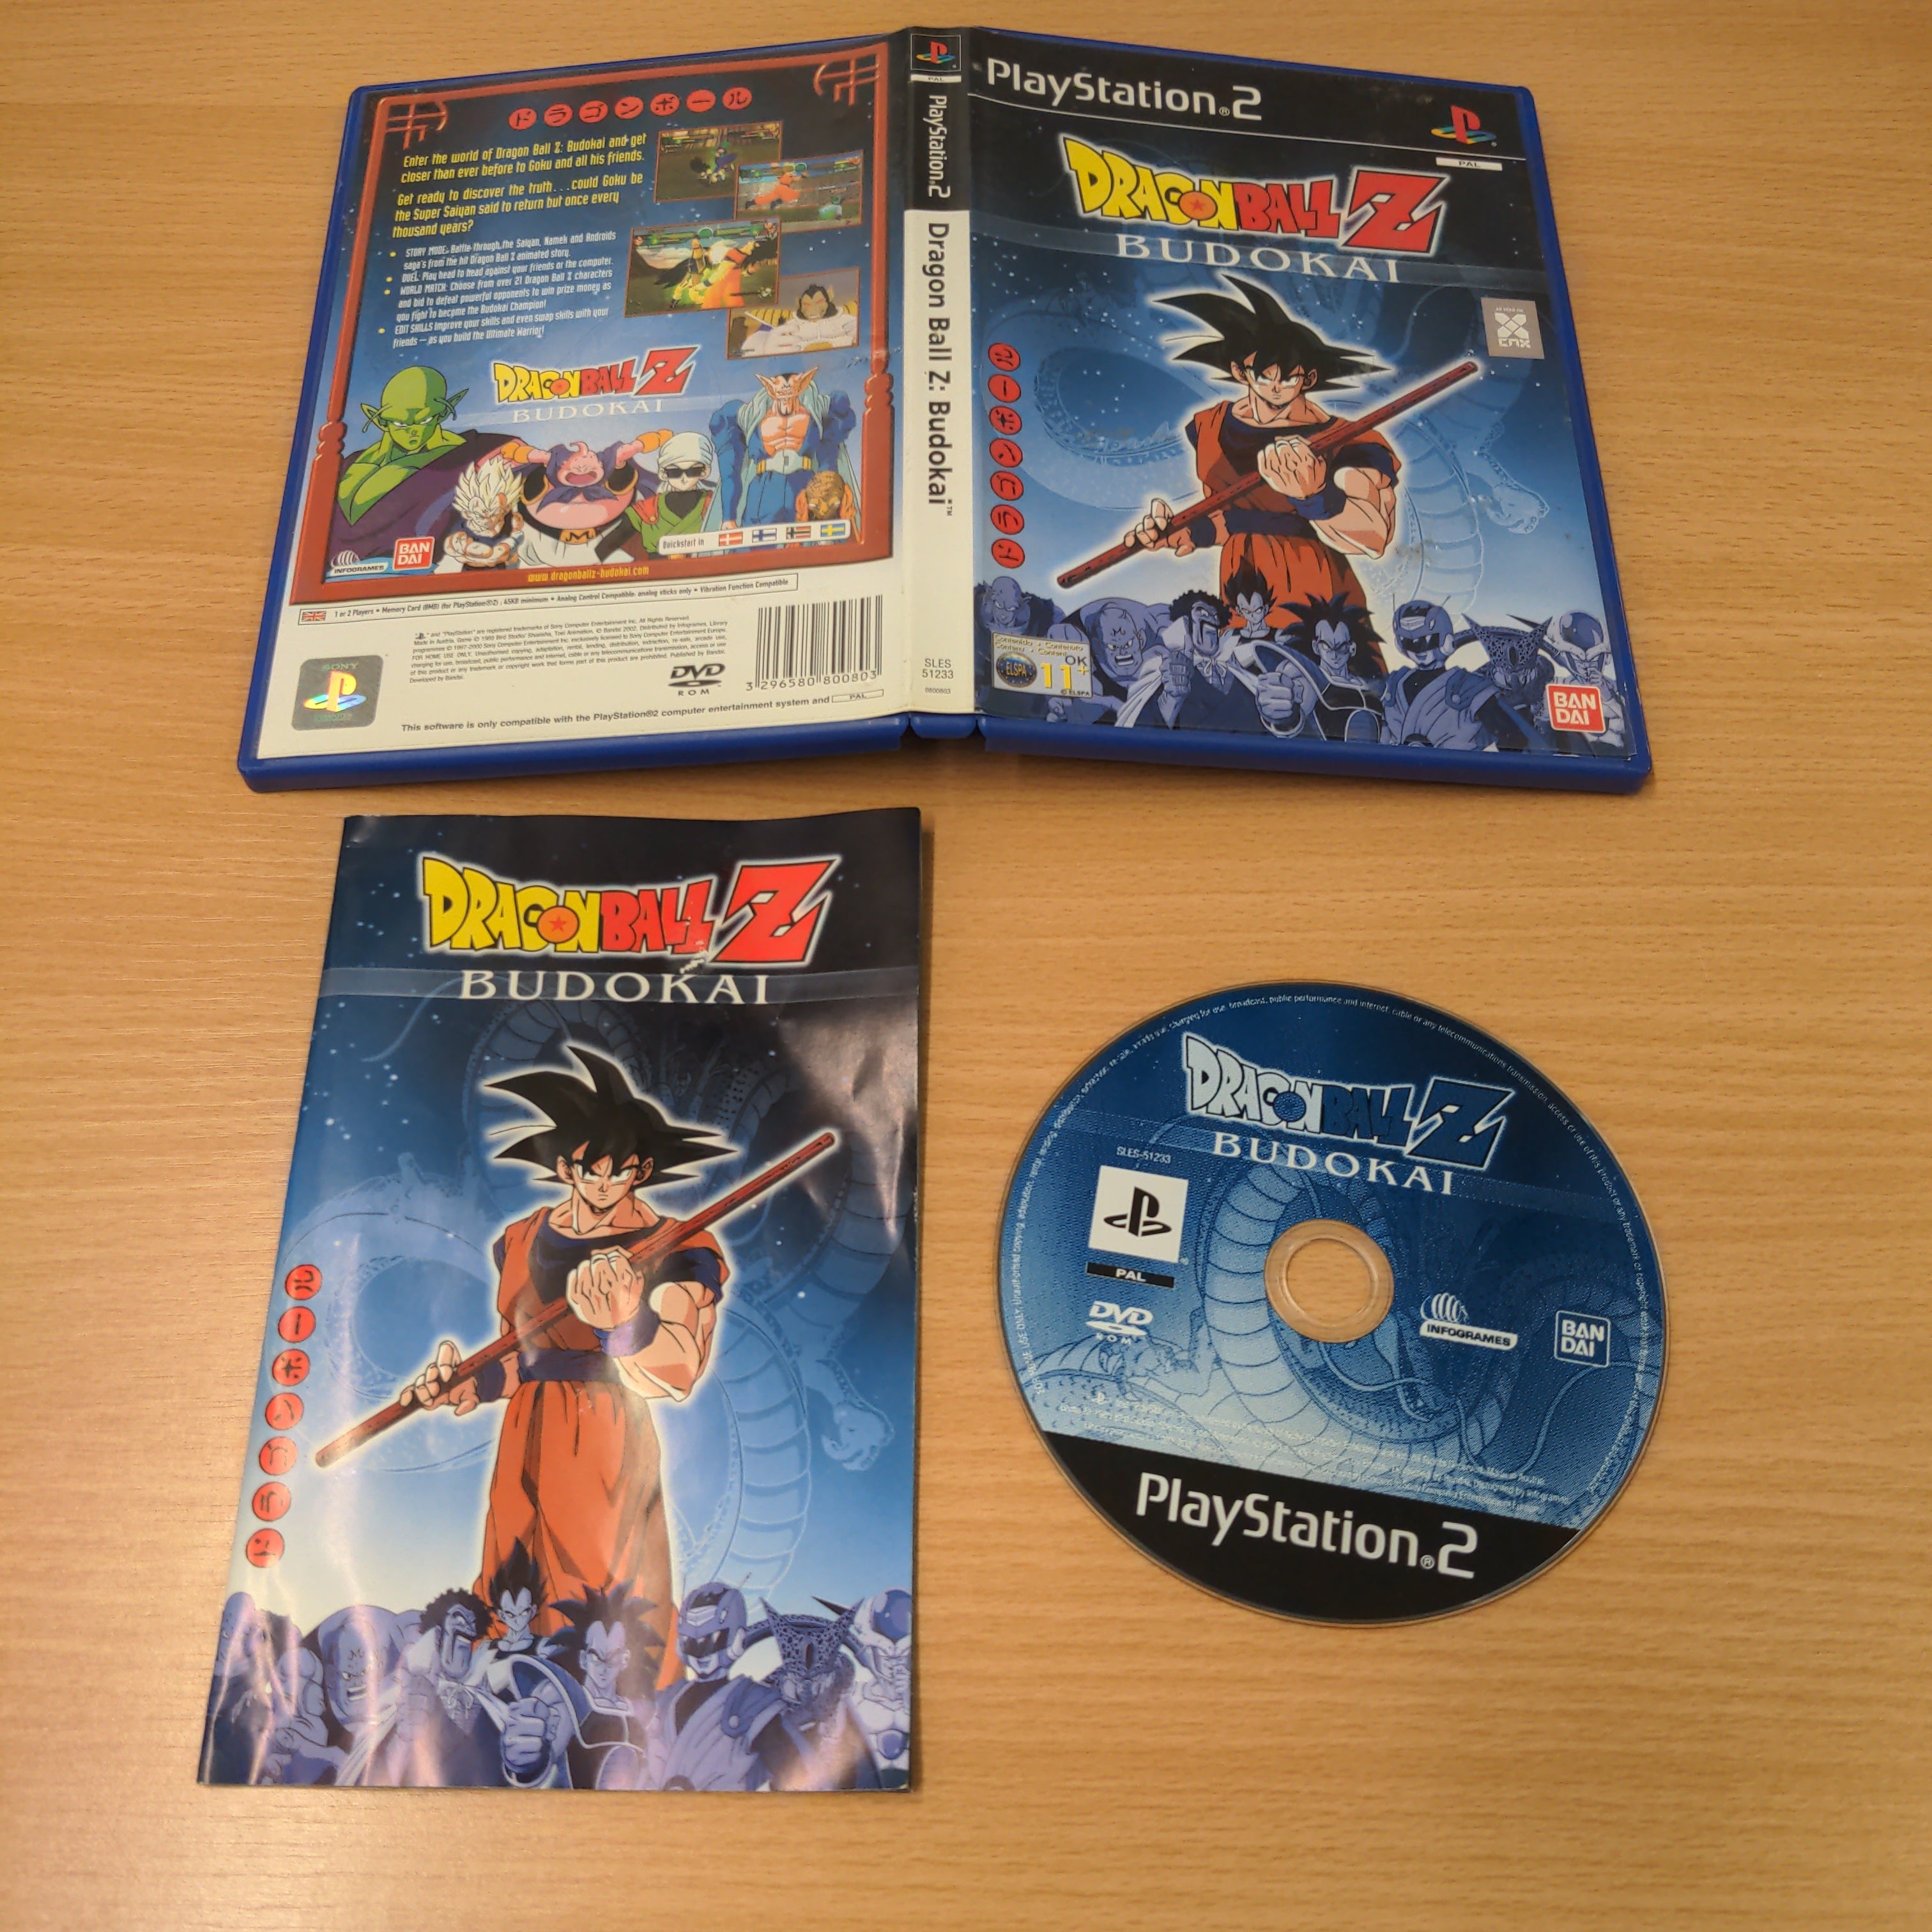 Dragon Ball Z: Budokai Sony PS2 game